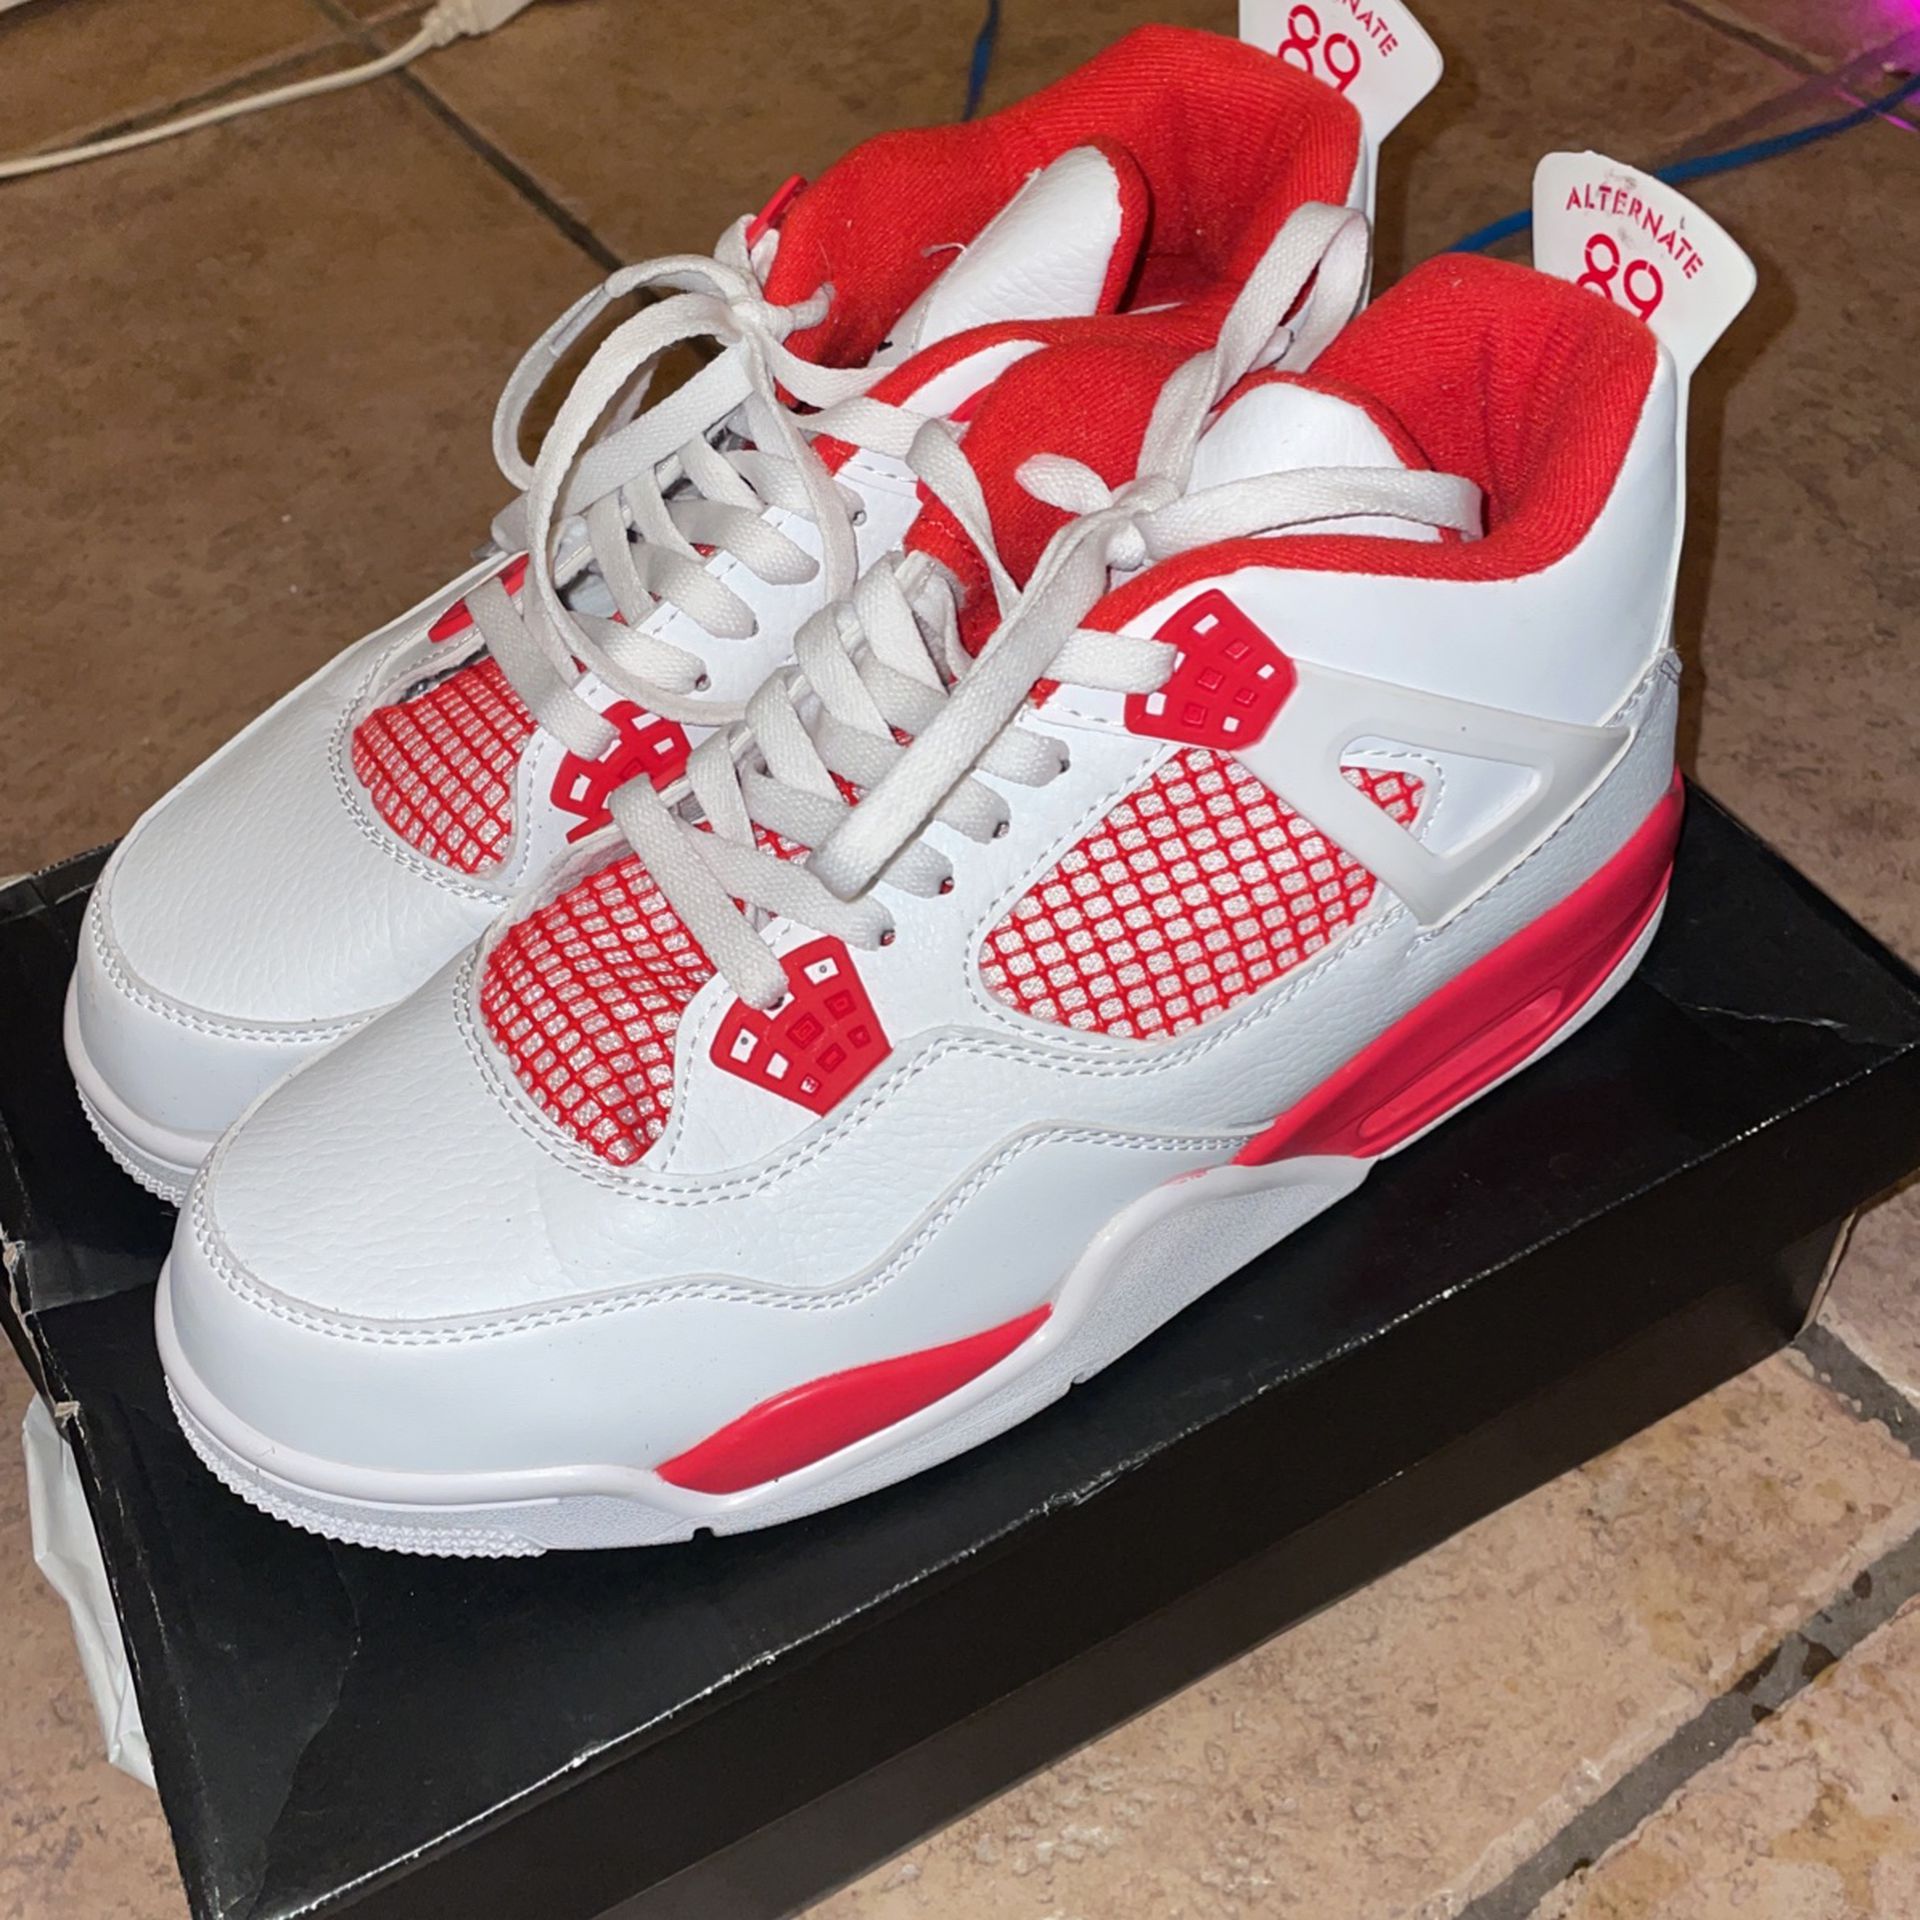 Air Jordan 13 Size 7 Women's for Sale in Las Vegas, NV - OfferUp